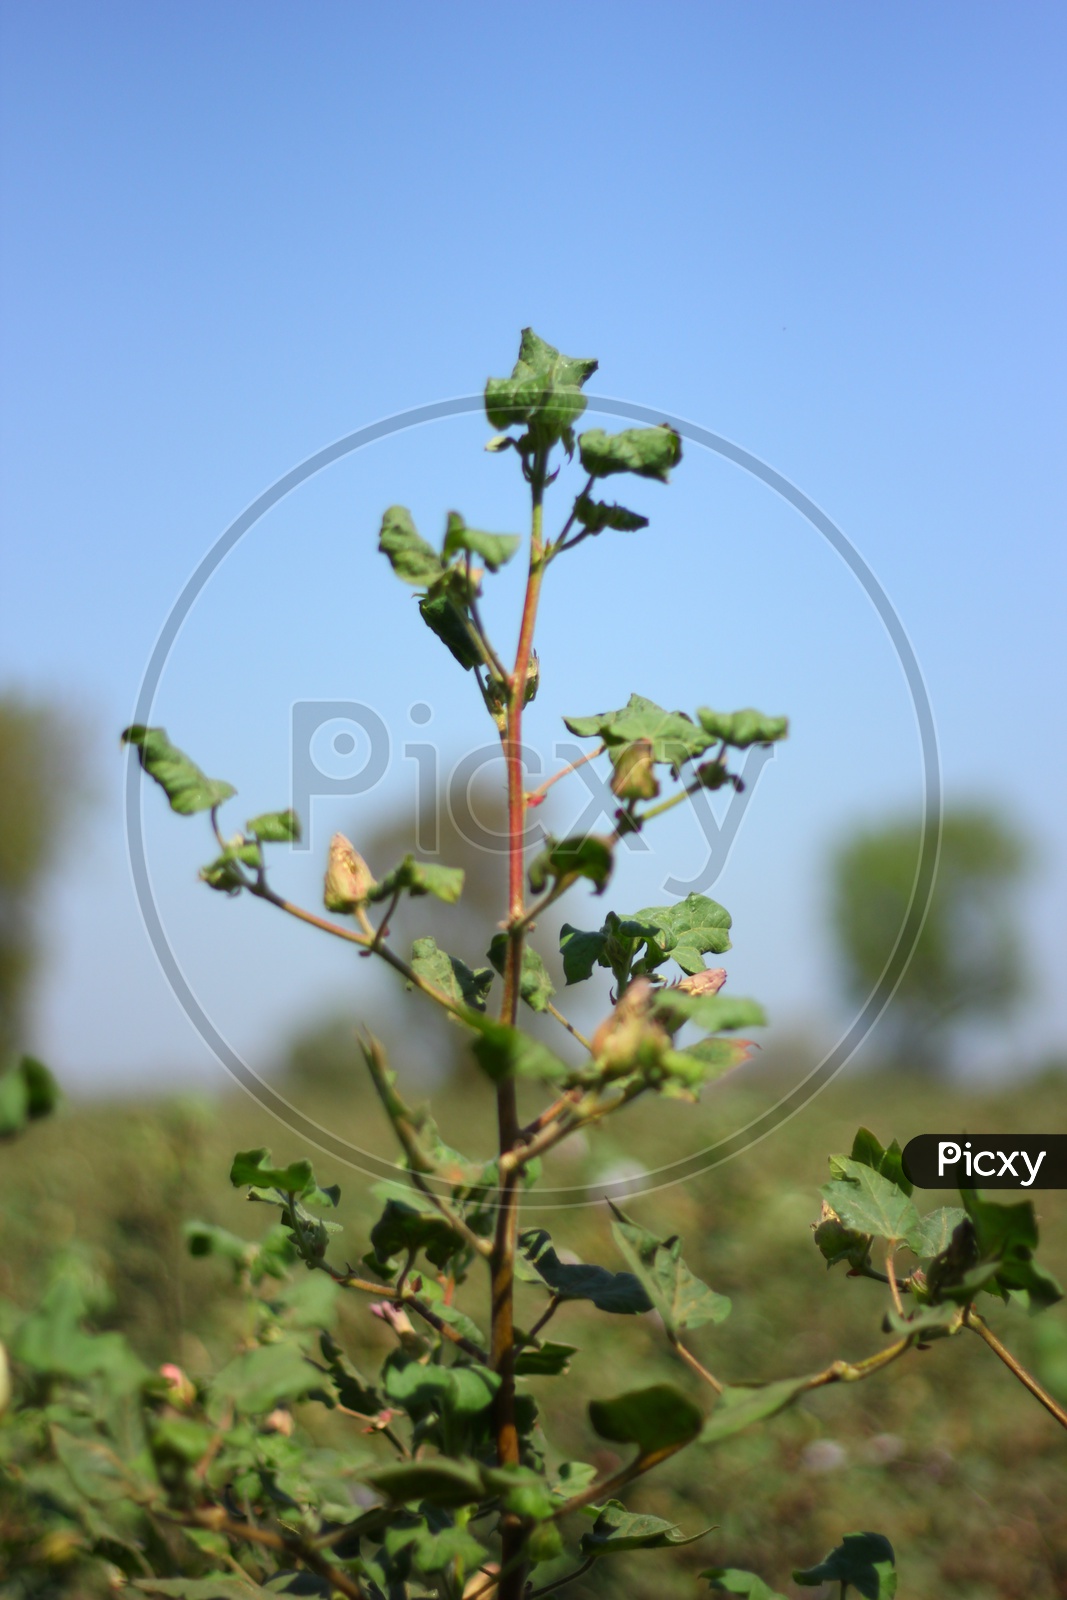 Cotton Plant Closeup Shot with BlueSky Backdrop